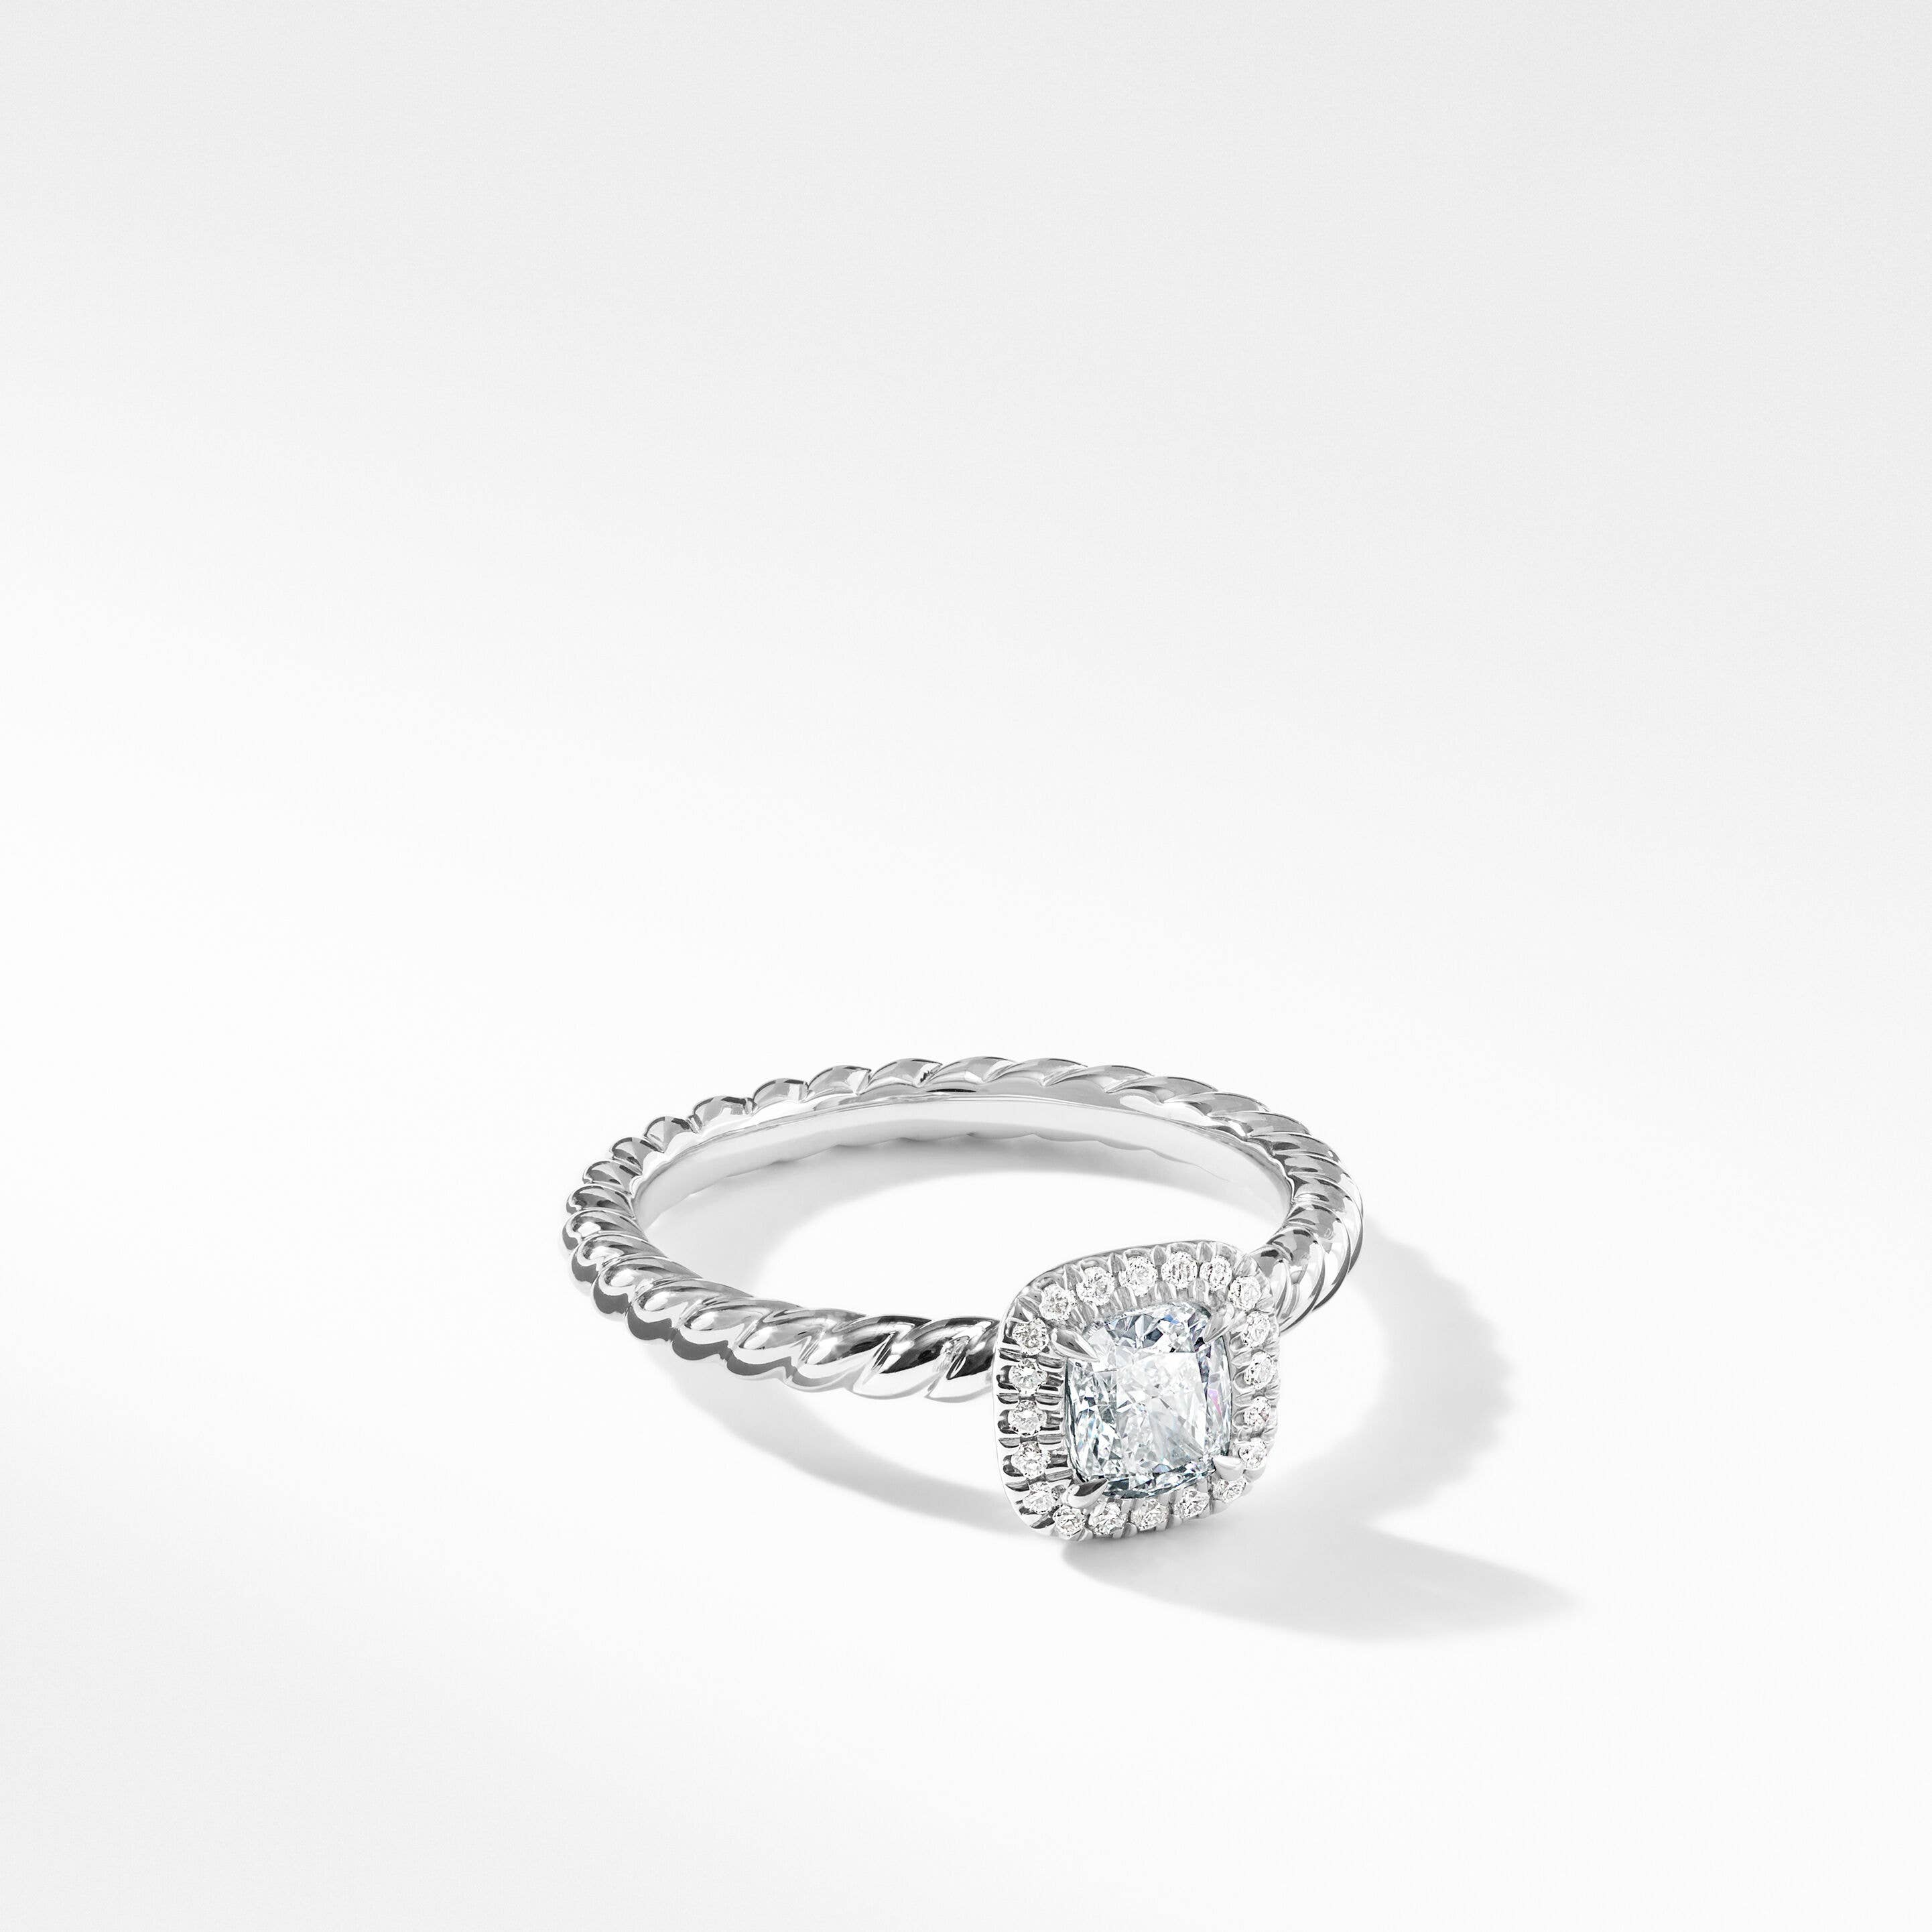 DY Capri Petite Engagement Ring in Platinum, Cushion